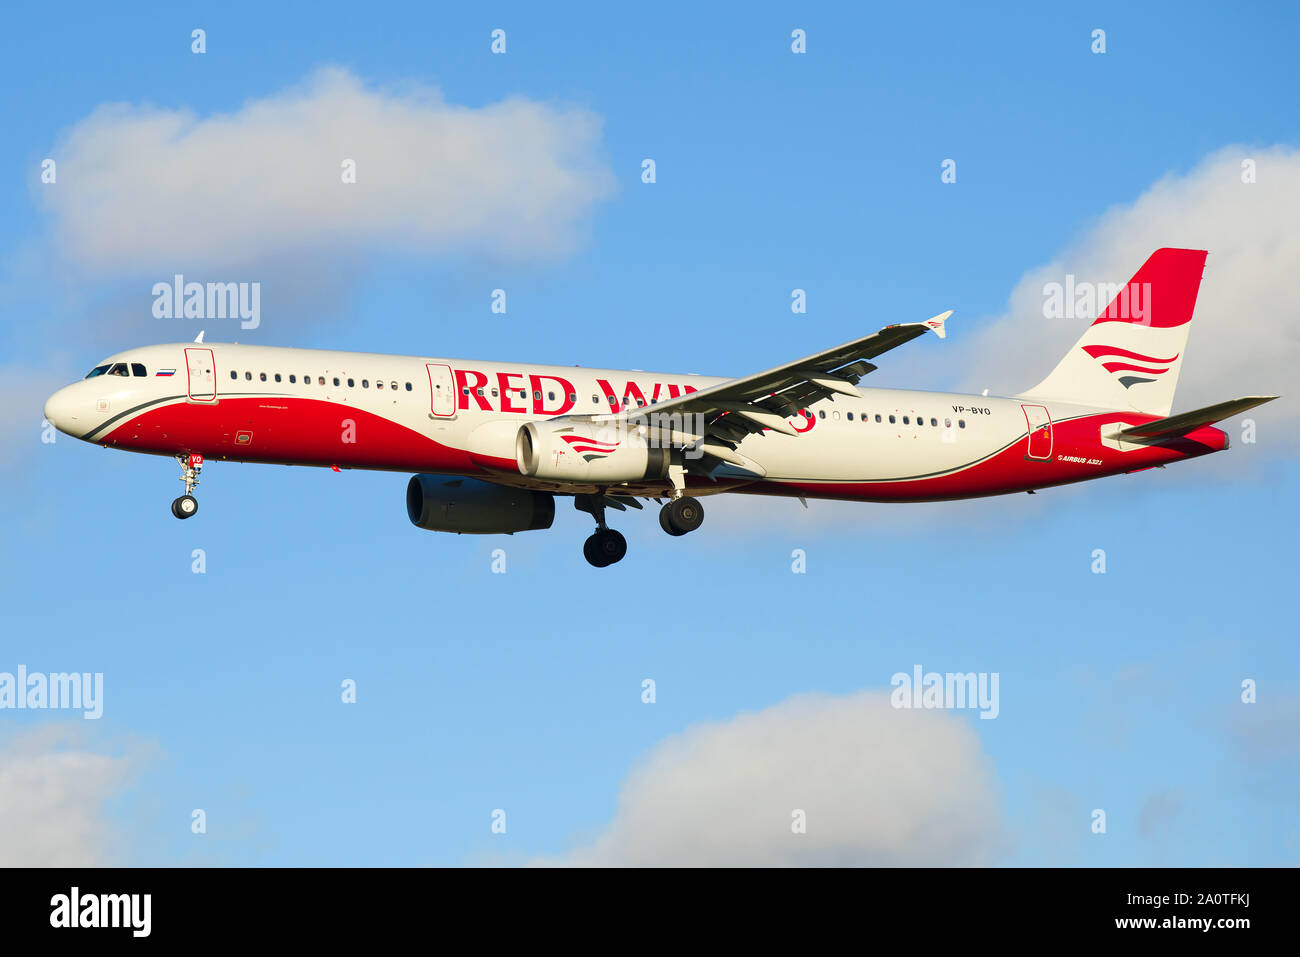 ST. PETERSBURG, Russland - Oktober 25, 2018: Der Airbus A 321-200 (VP-Bvo) der Red Wings airline Schließen in den bewölkten Himmel Stockfoto